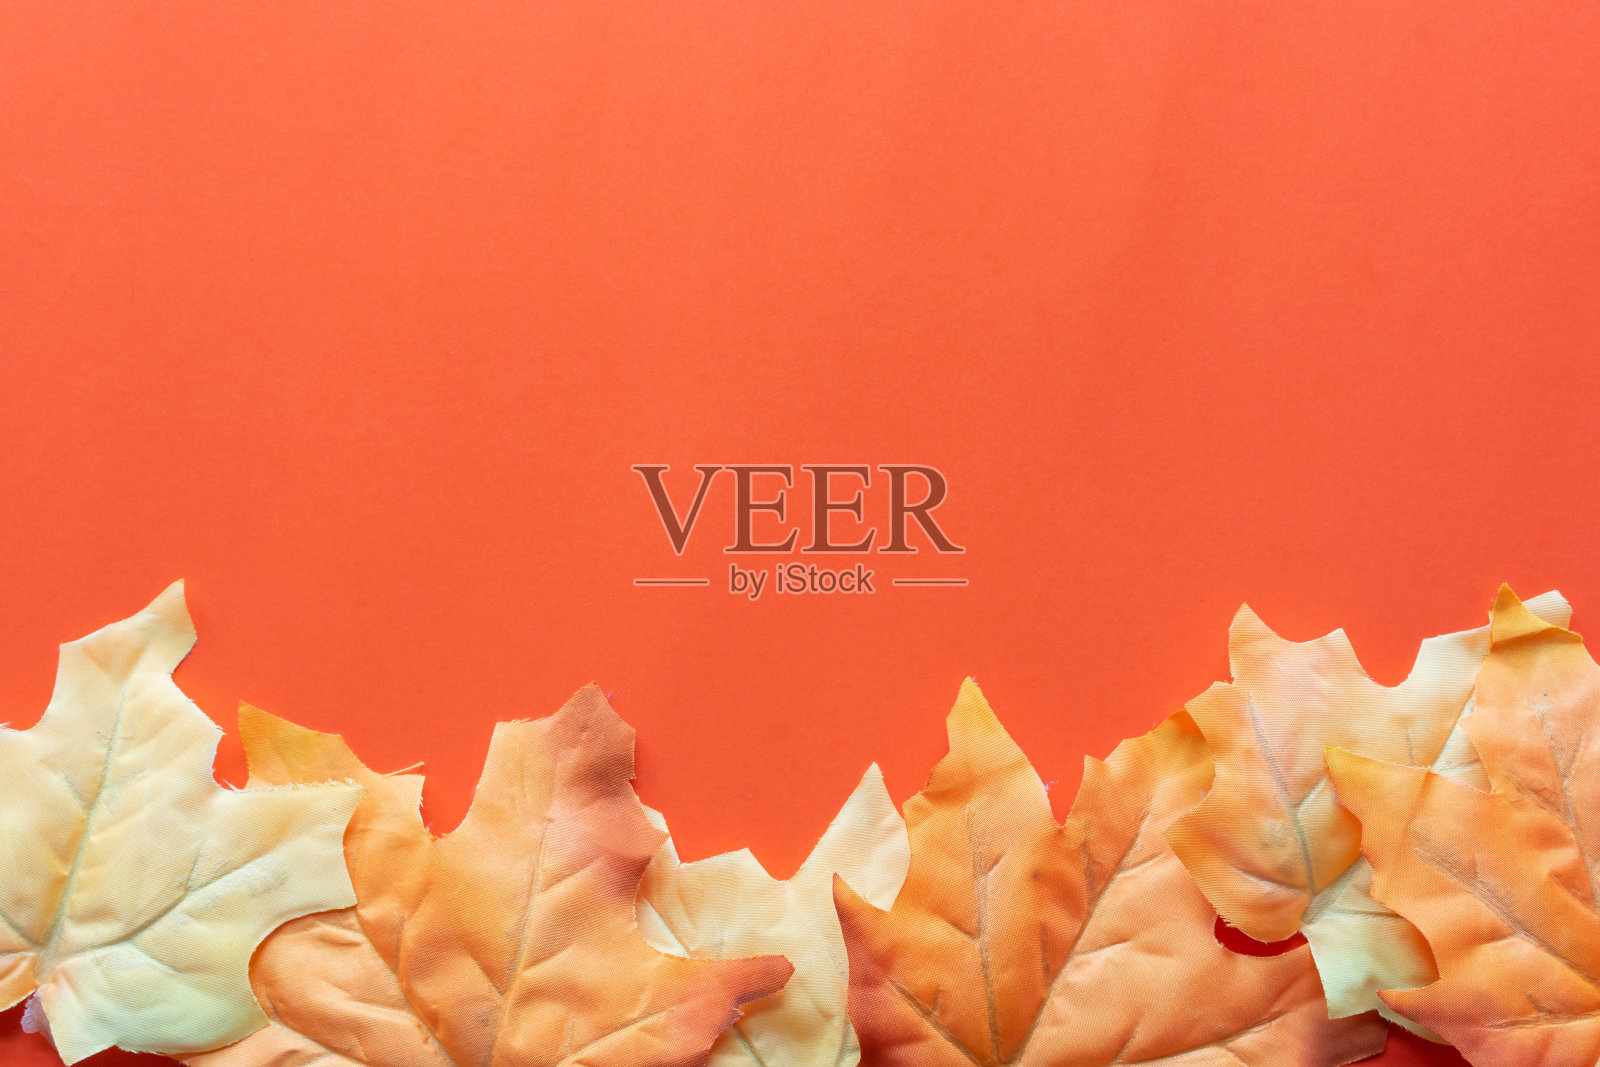 特写俯视图组枫叶置于橙色背景上设计感恩节和万圣节的装饰集合概念照片摄影图片